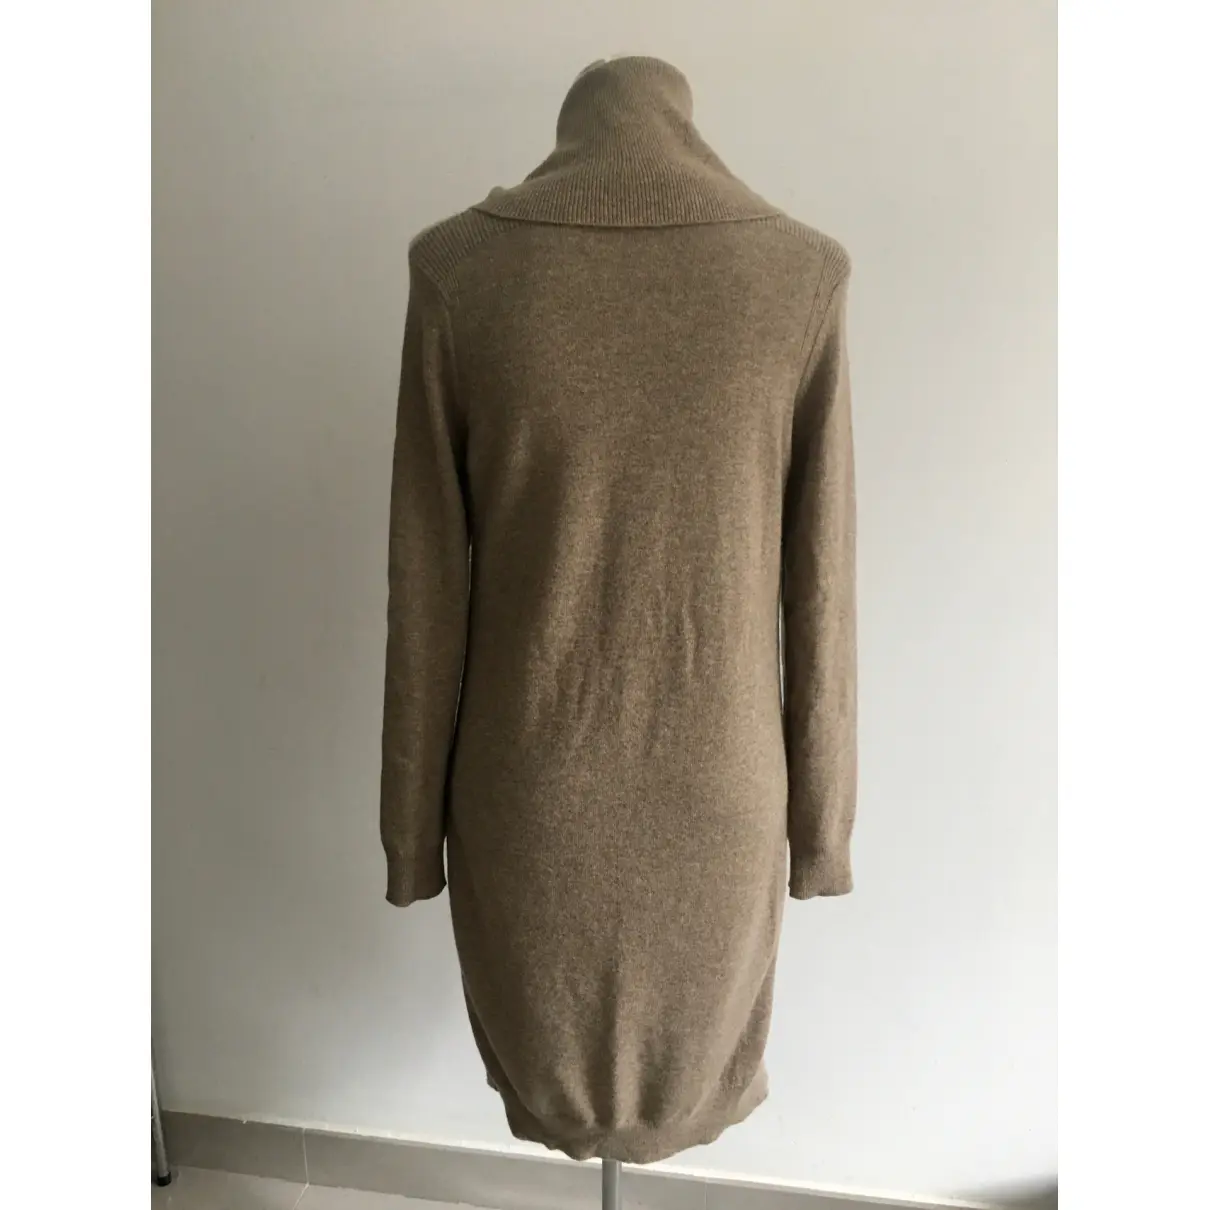 Buy Jaeger Wool mid-length dress online